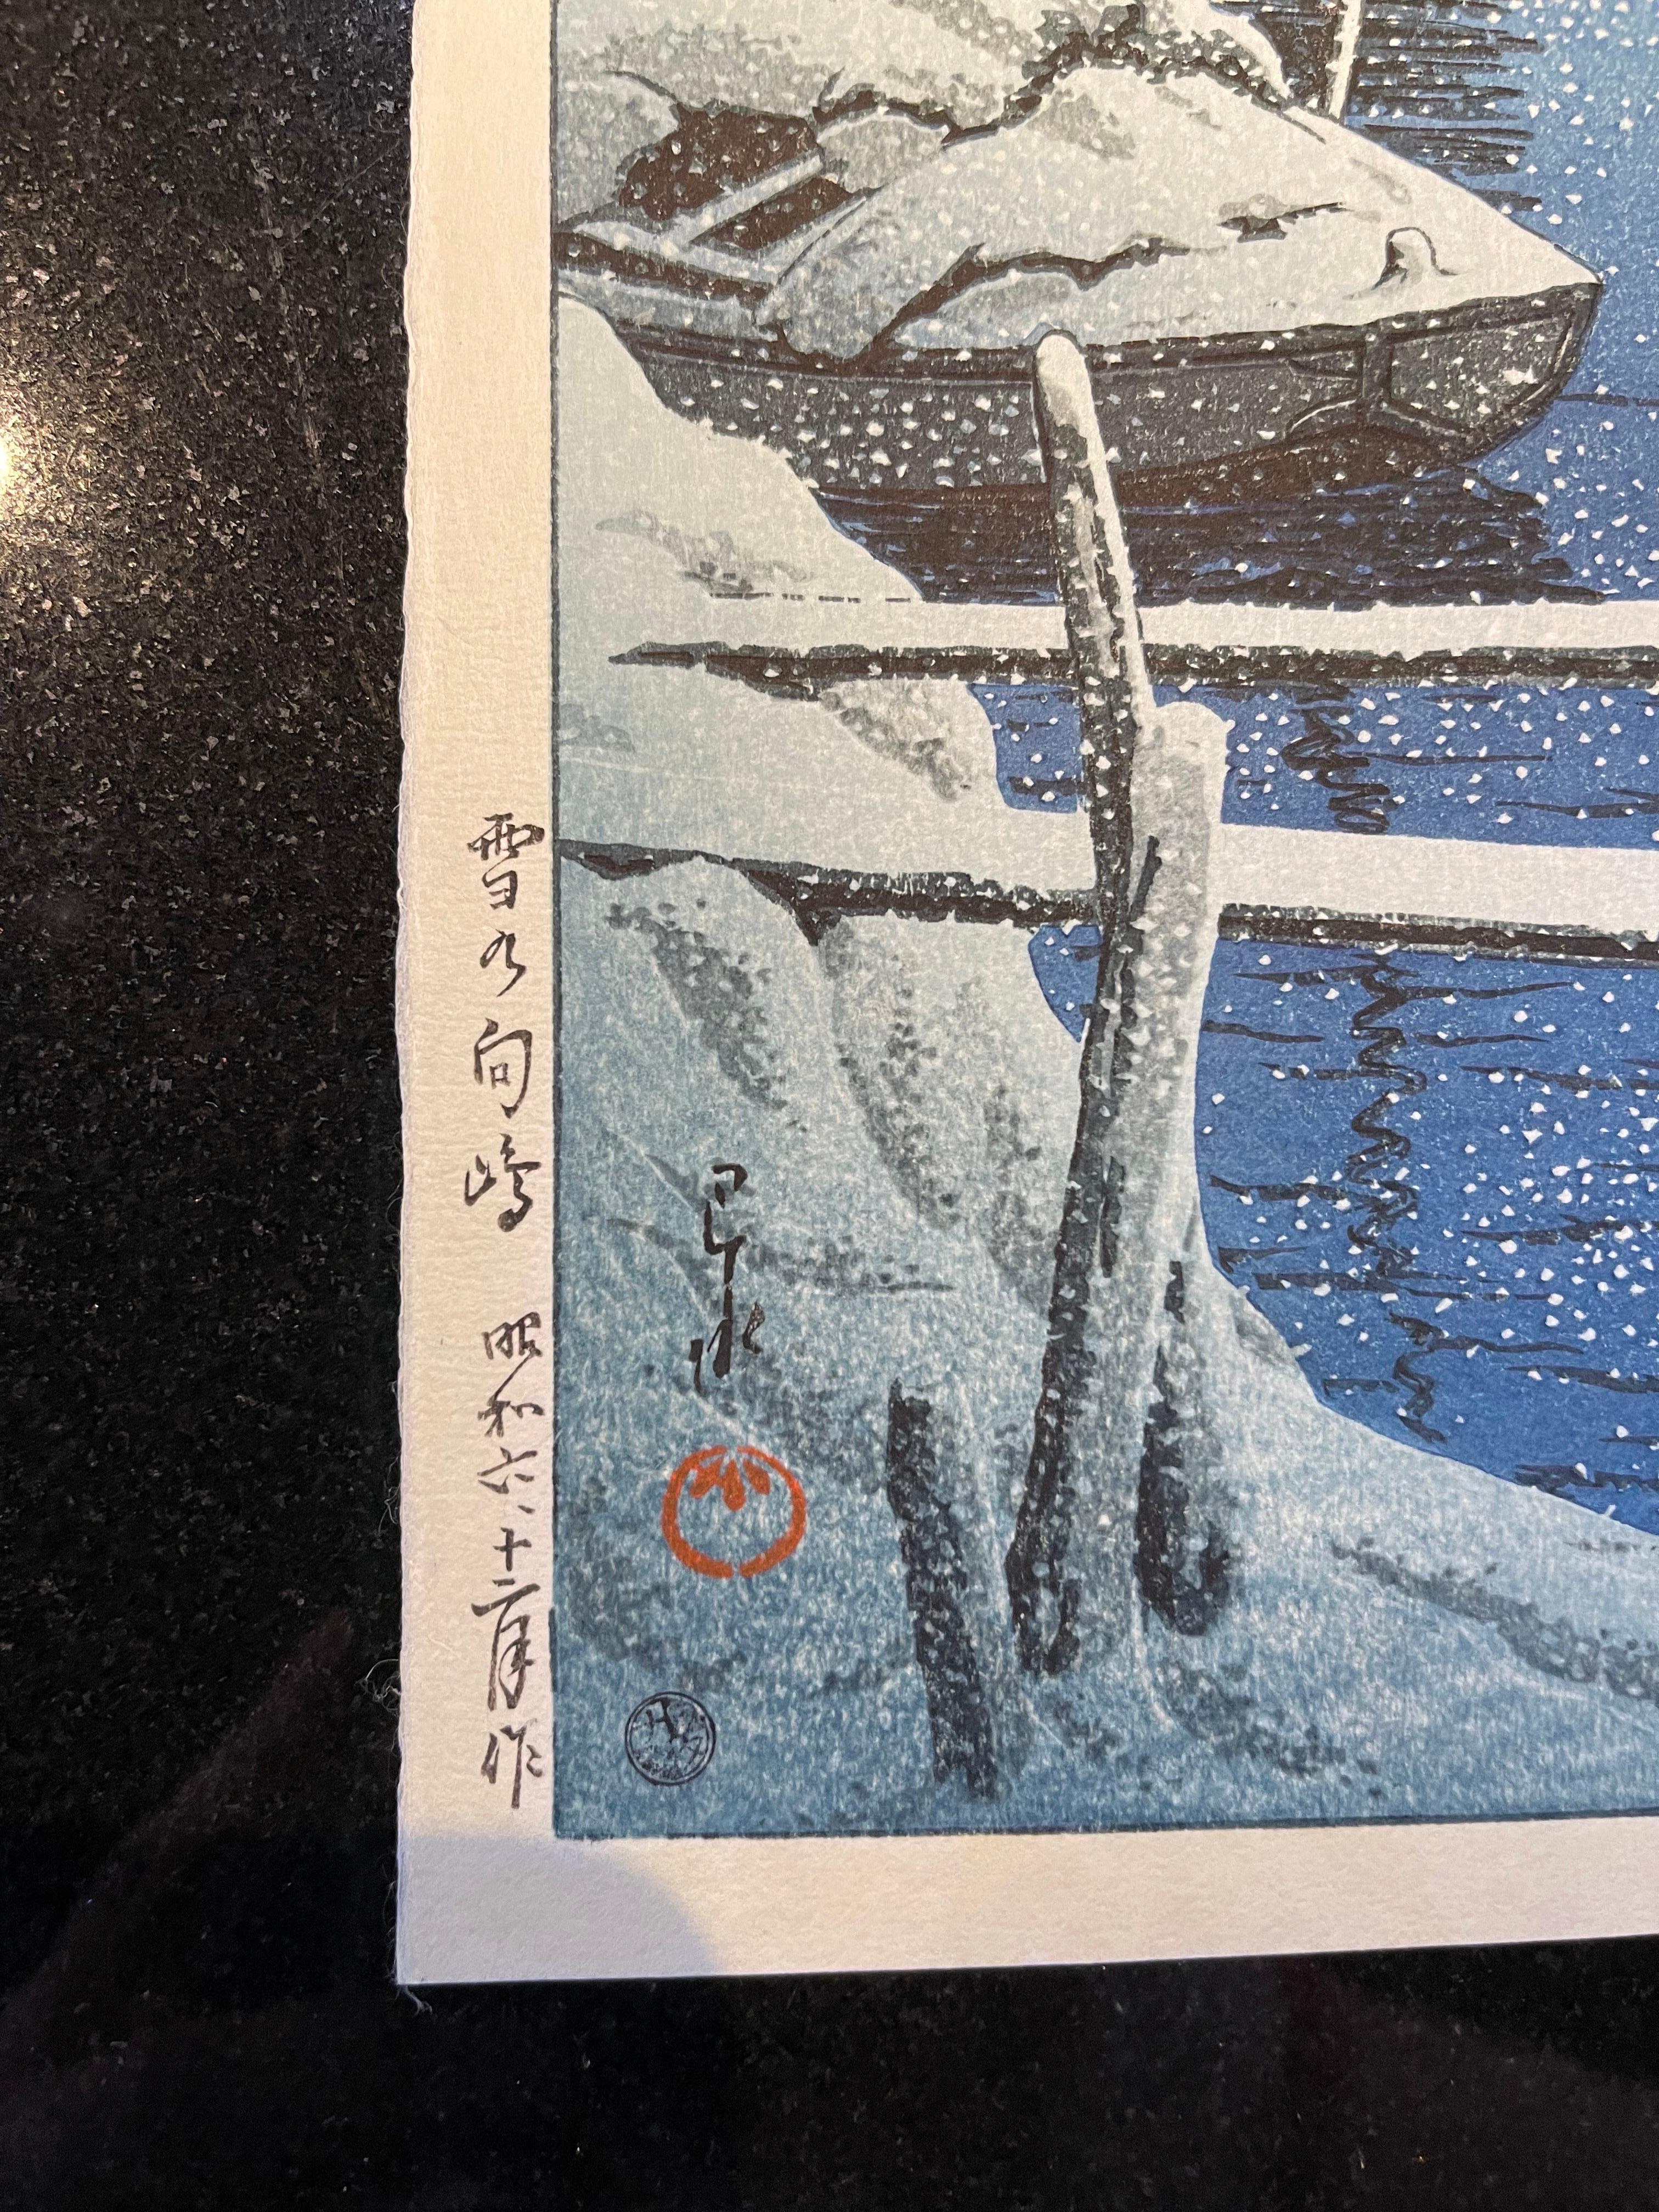 Cette gravure en bloc de Kawase Hasui date de l'ère Showa (1926-1989).
Ce tirage a été réalisé en 1931. 
Kawase Hasui a vécu de 1883 à 1957.
Un maître de son art. 
Kawase Hasui (1883-1957) 
Époque Showa (1926-1989), daté de 1931 
Estampe oban